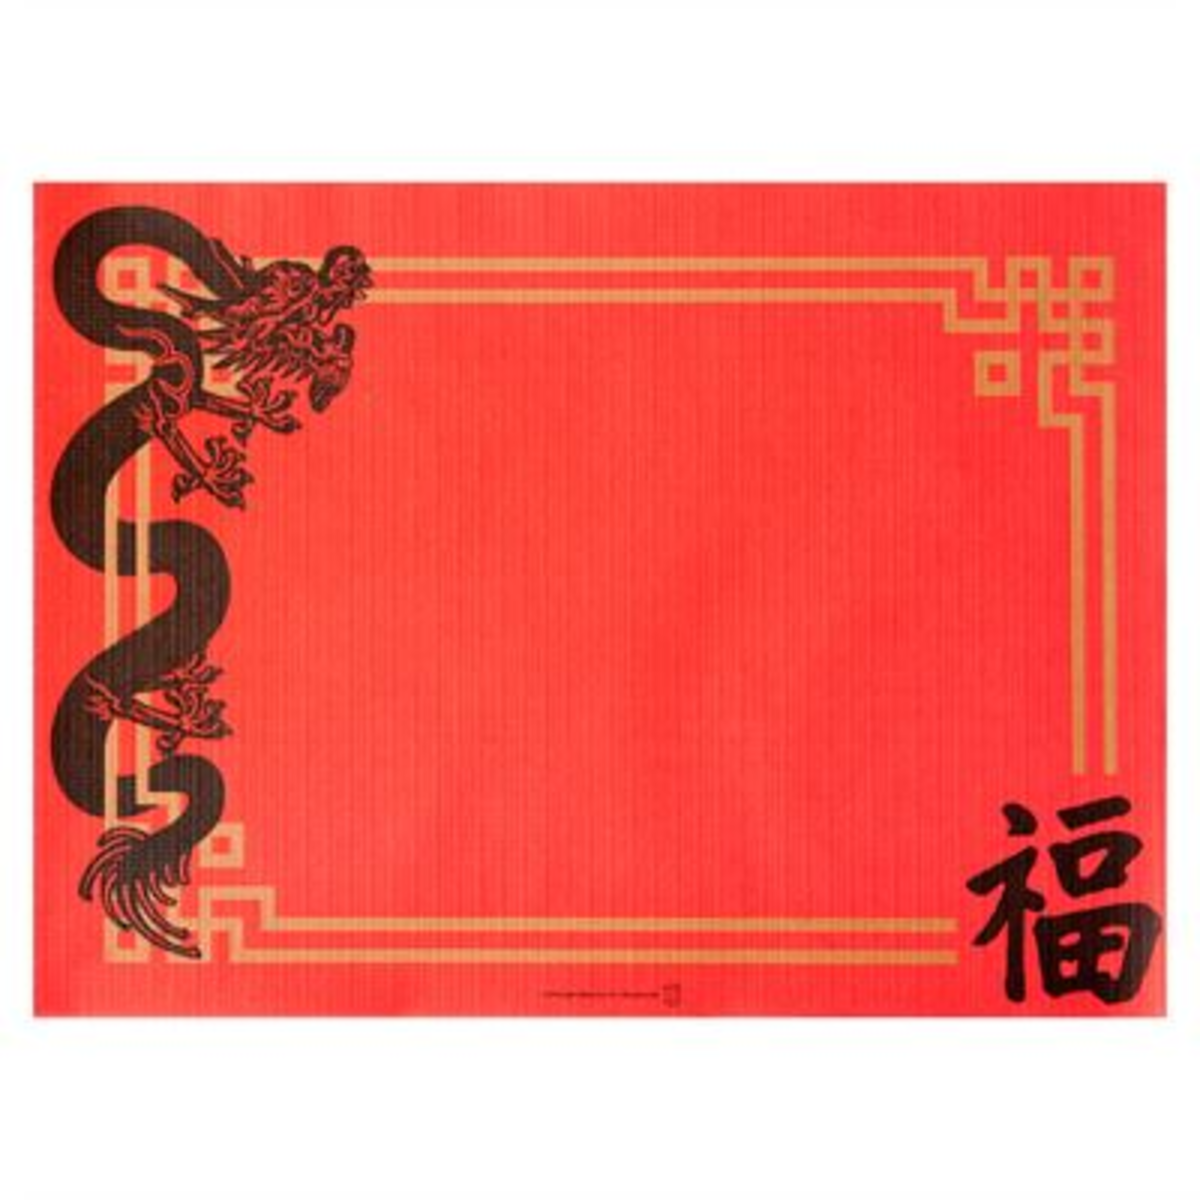 Set de table Chine 31x43 cm rouge x 2000 Garcia de Pou - 122.30